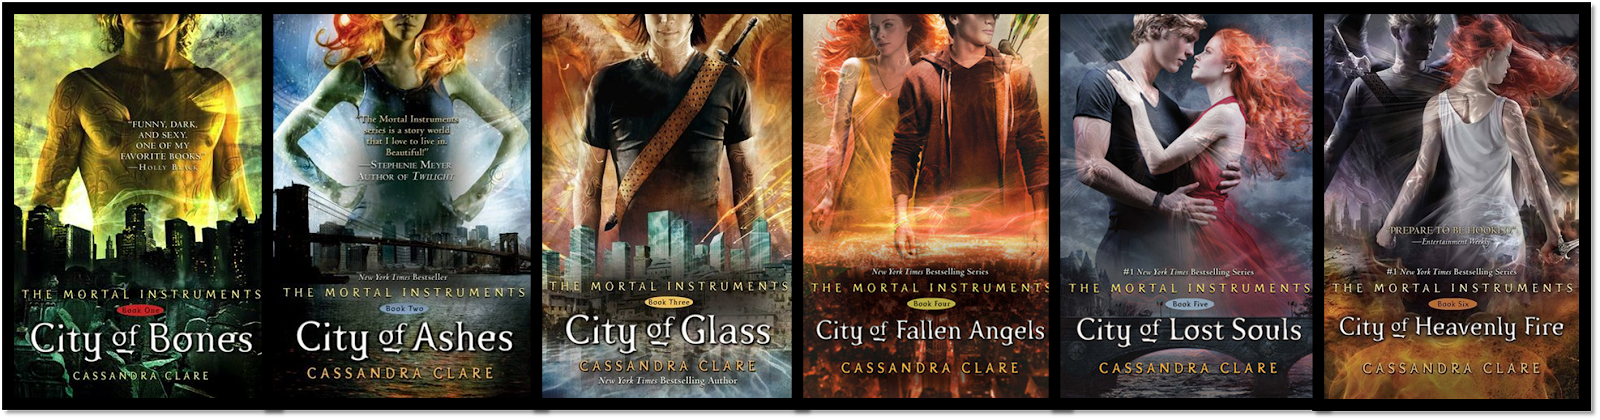 City of Heavenly Fire - Hardcover (livro em inglês) Cassandra